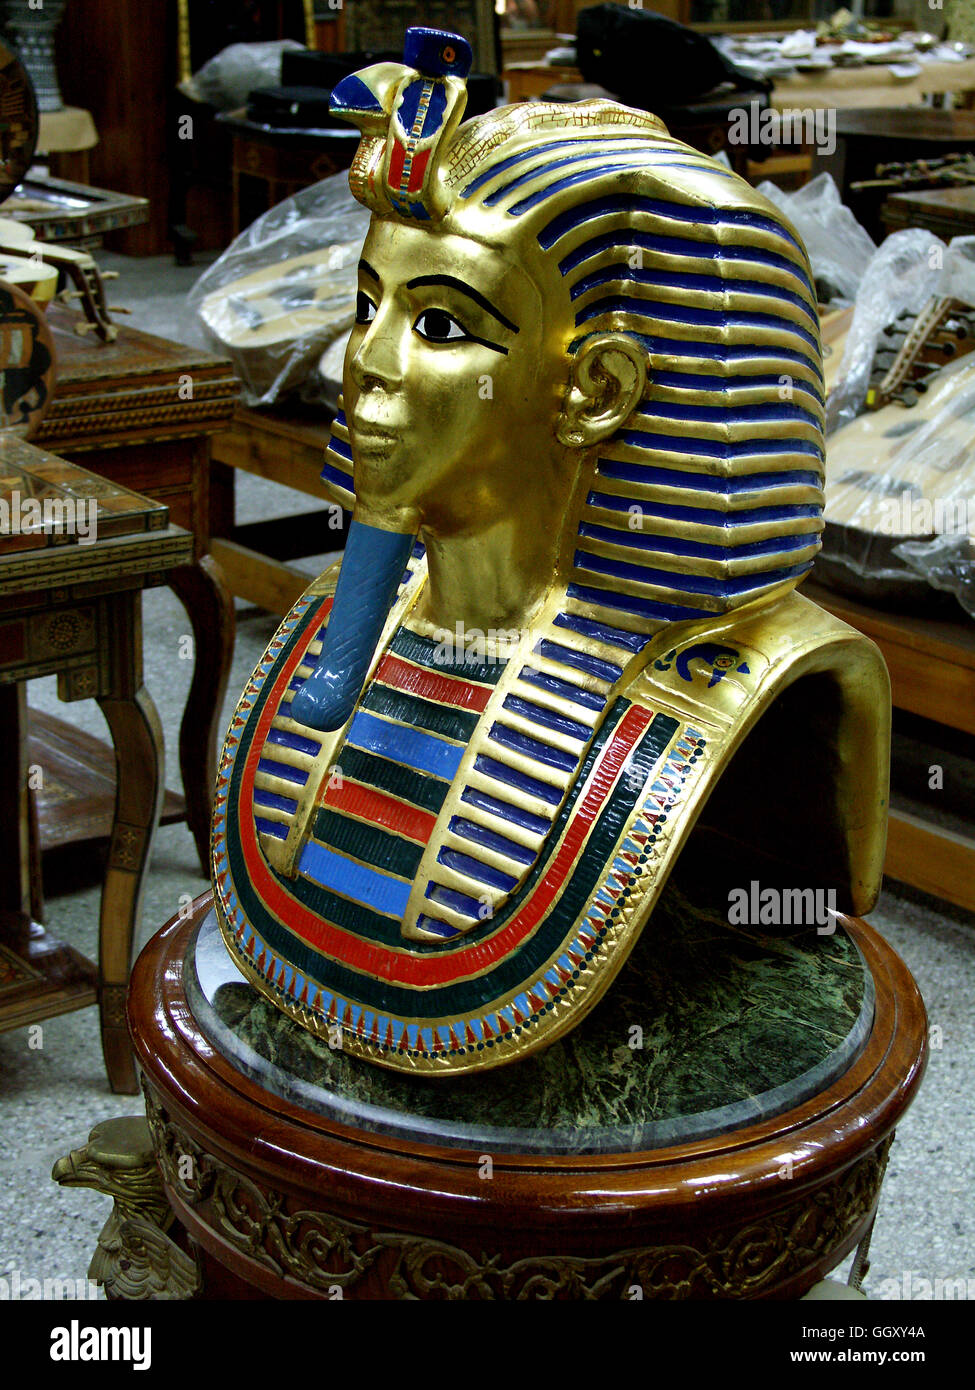 A conserver dans le quartier copte du Caire, la vente de meubles inspirée des artefacts égyptiens antiques. Cas maman de Toutankhamon. Banque D'Images